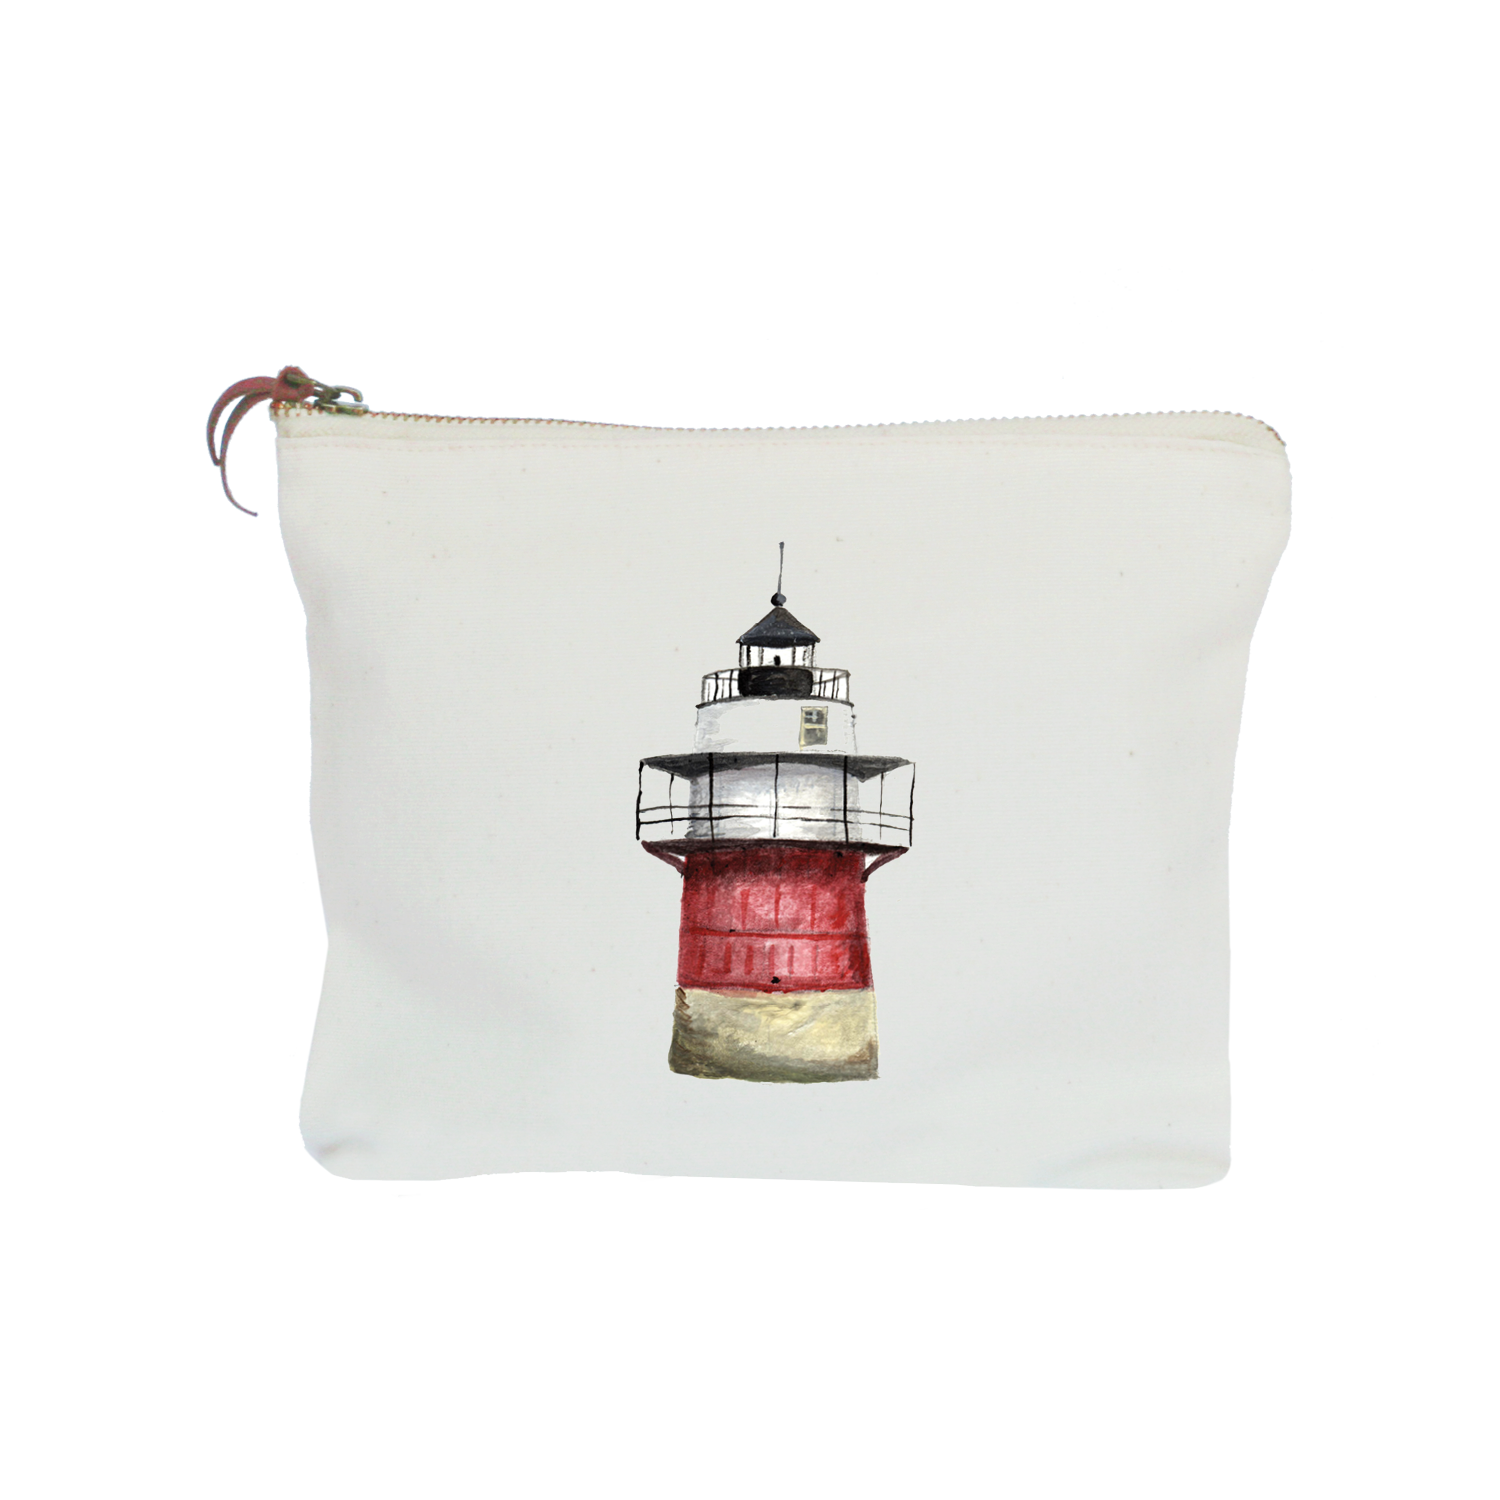 duxbury lighthouse zipper pouch